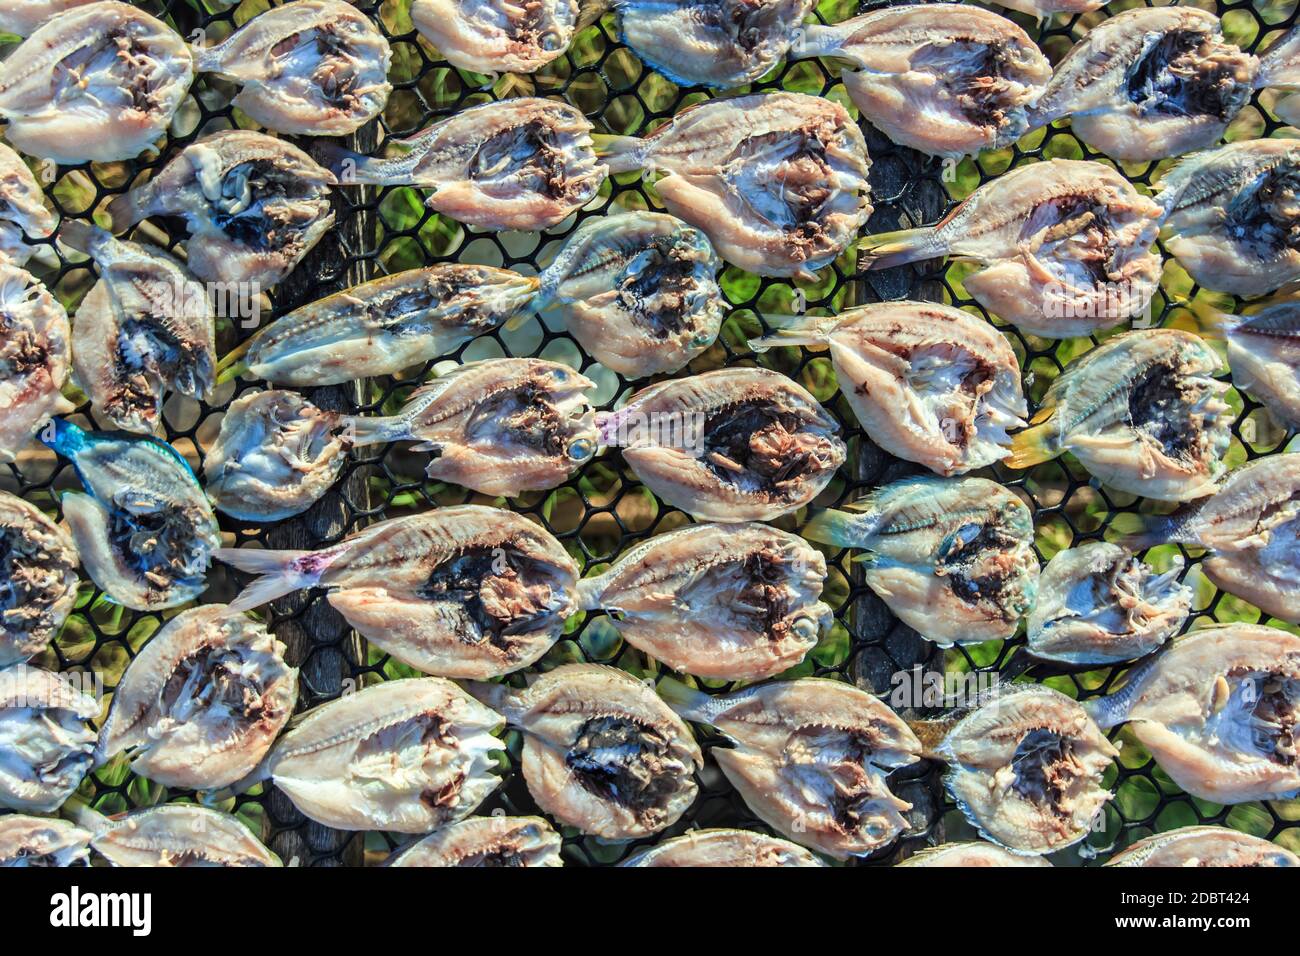 Pesce secco salato in open space all'isola di Maiga, un'isola abitata principalmente dal mare Bajau. Foto Stock